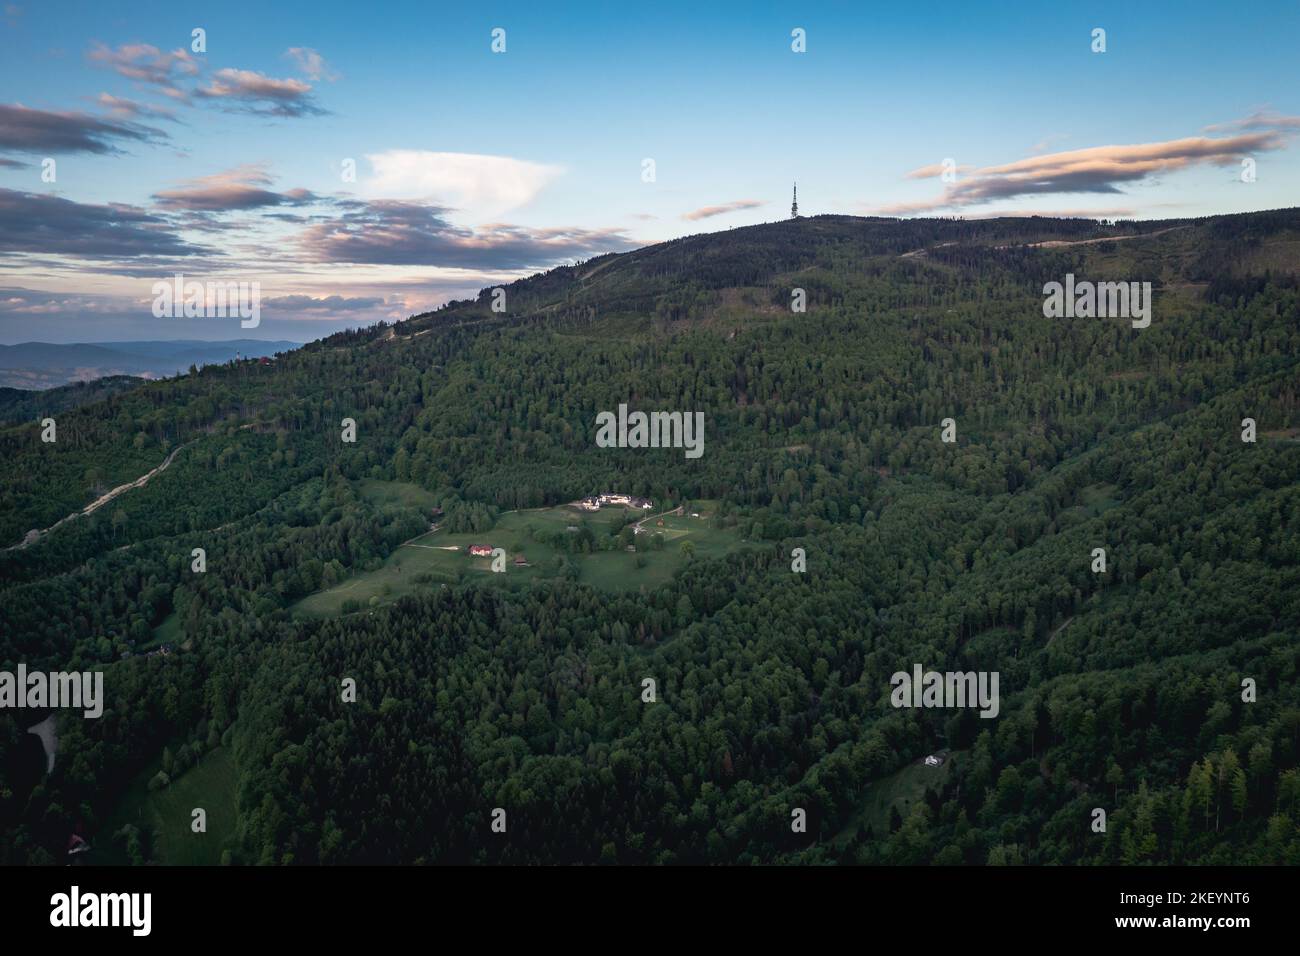 Vue depuis la ville de Szczyrk sur le mont Skrzyczne, le sommet le plus élevé des monts Silésiens des Beskids, le comté de Bielsko, Silésien Voivodeship dans le sud de la Pologne Banque D'Images